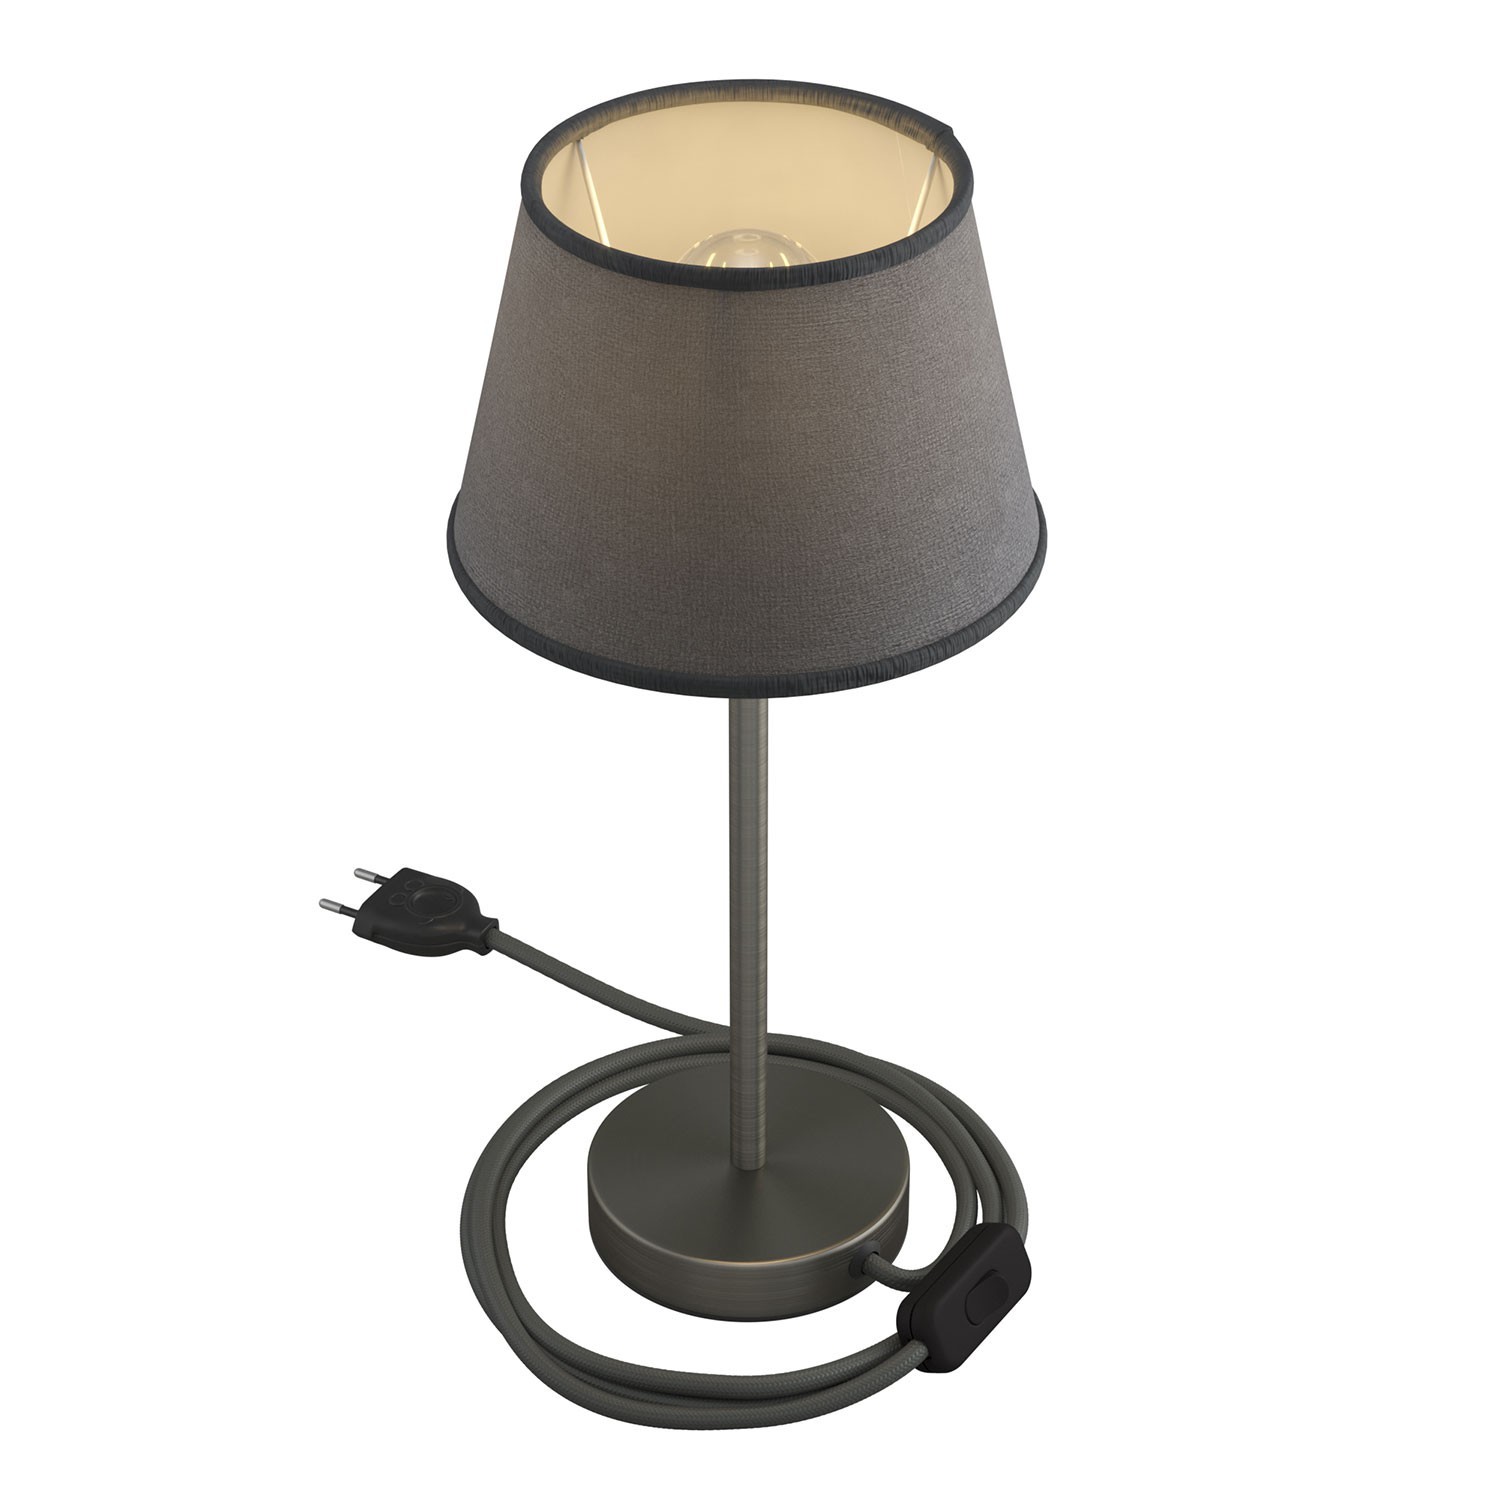 Alzaluce con paralume Impero, lampada da tavolo in metallo con spina 2 poli, cavo e interruttore